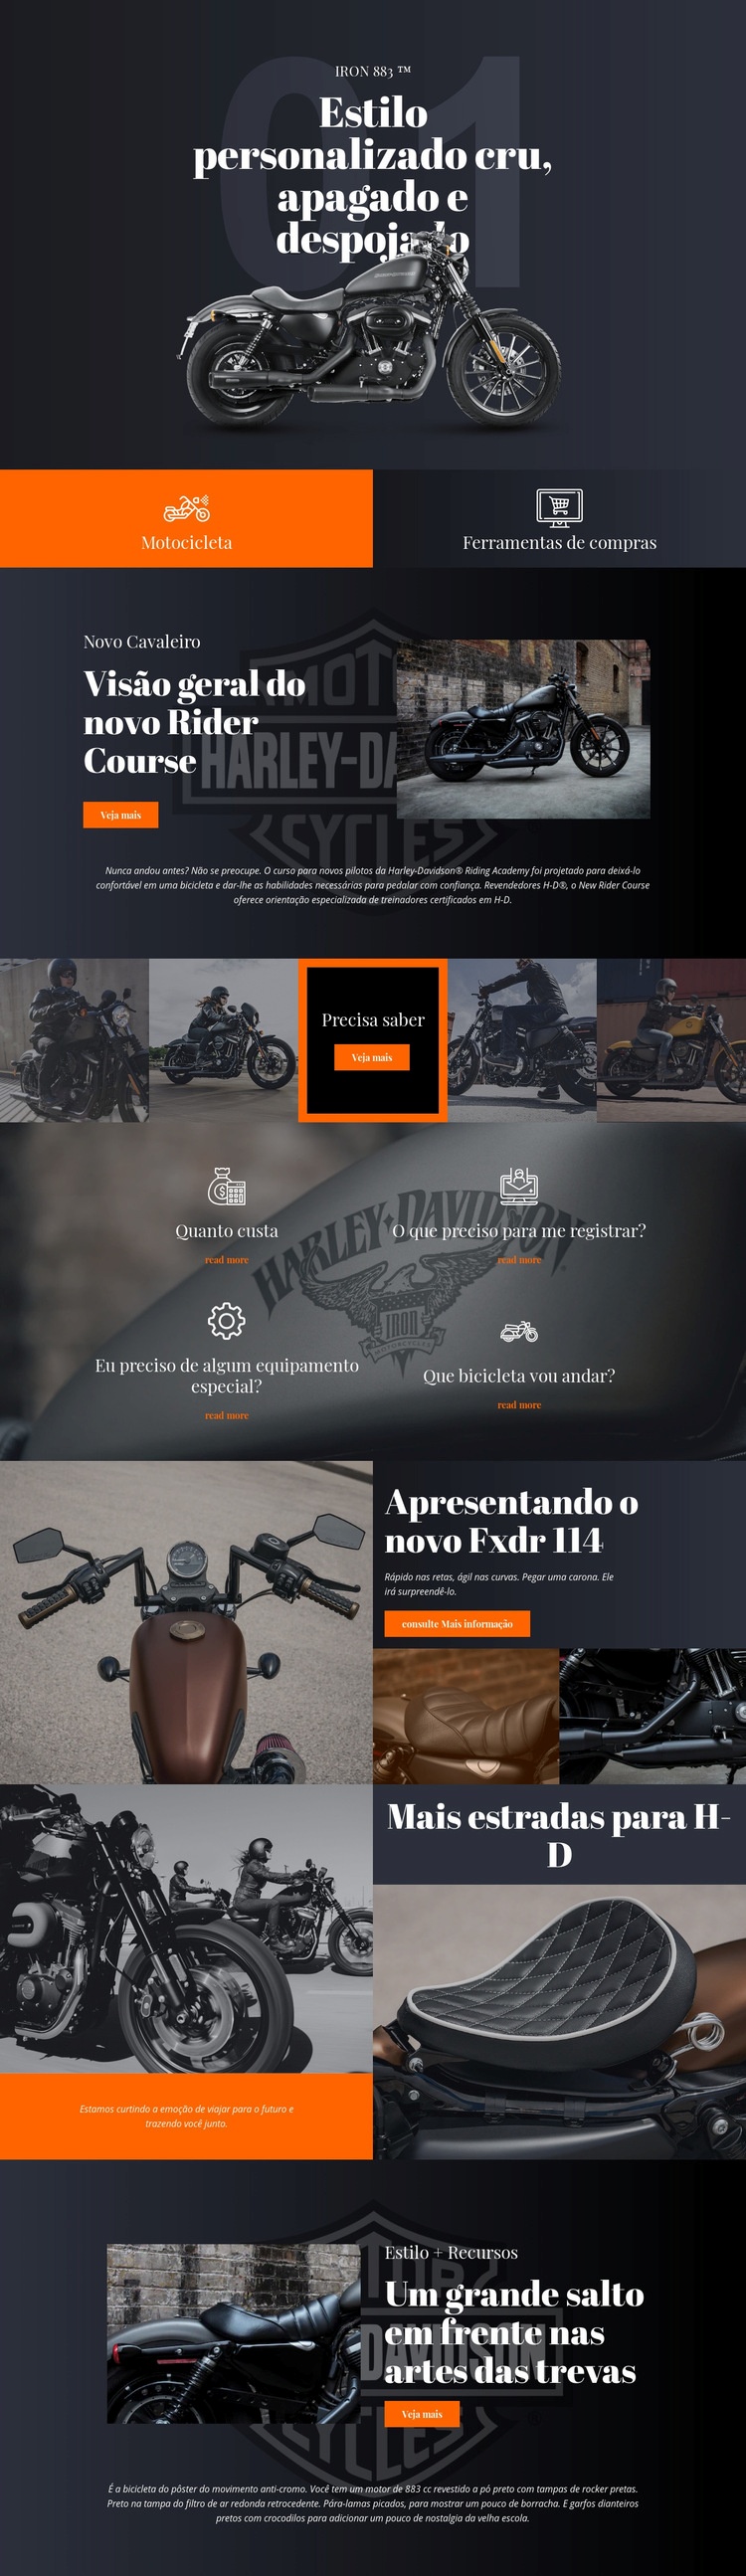 Harley Davidson Modelo